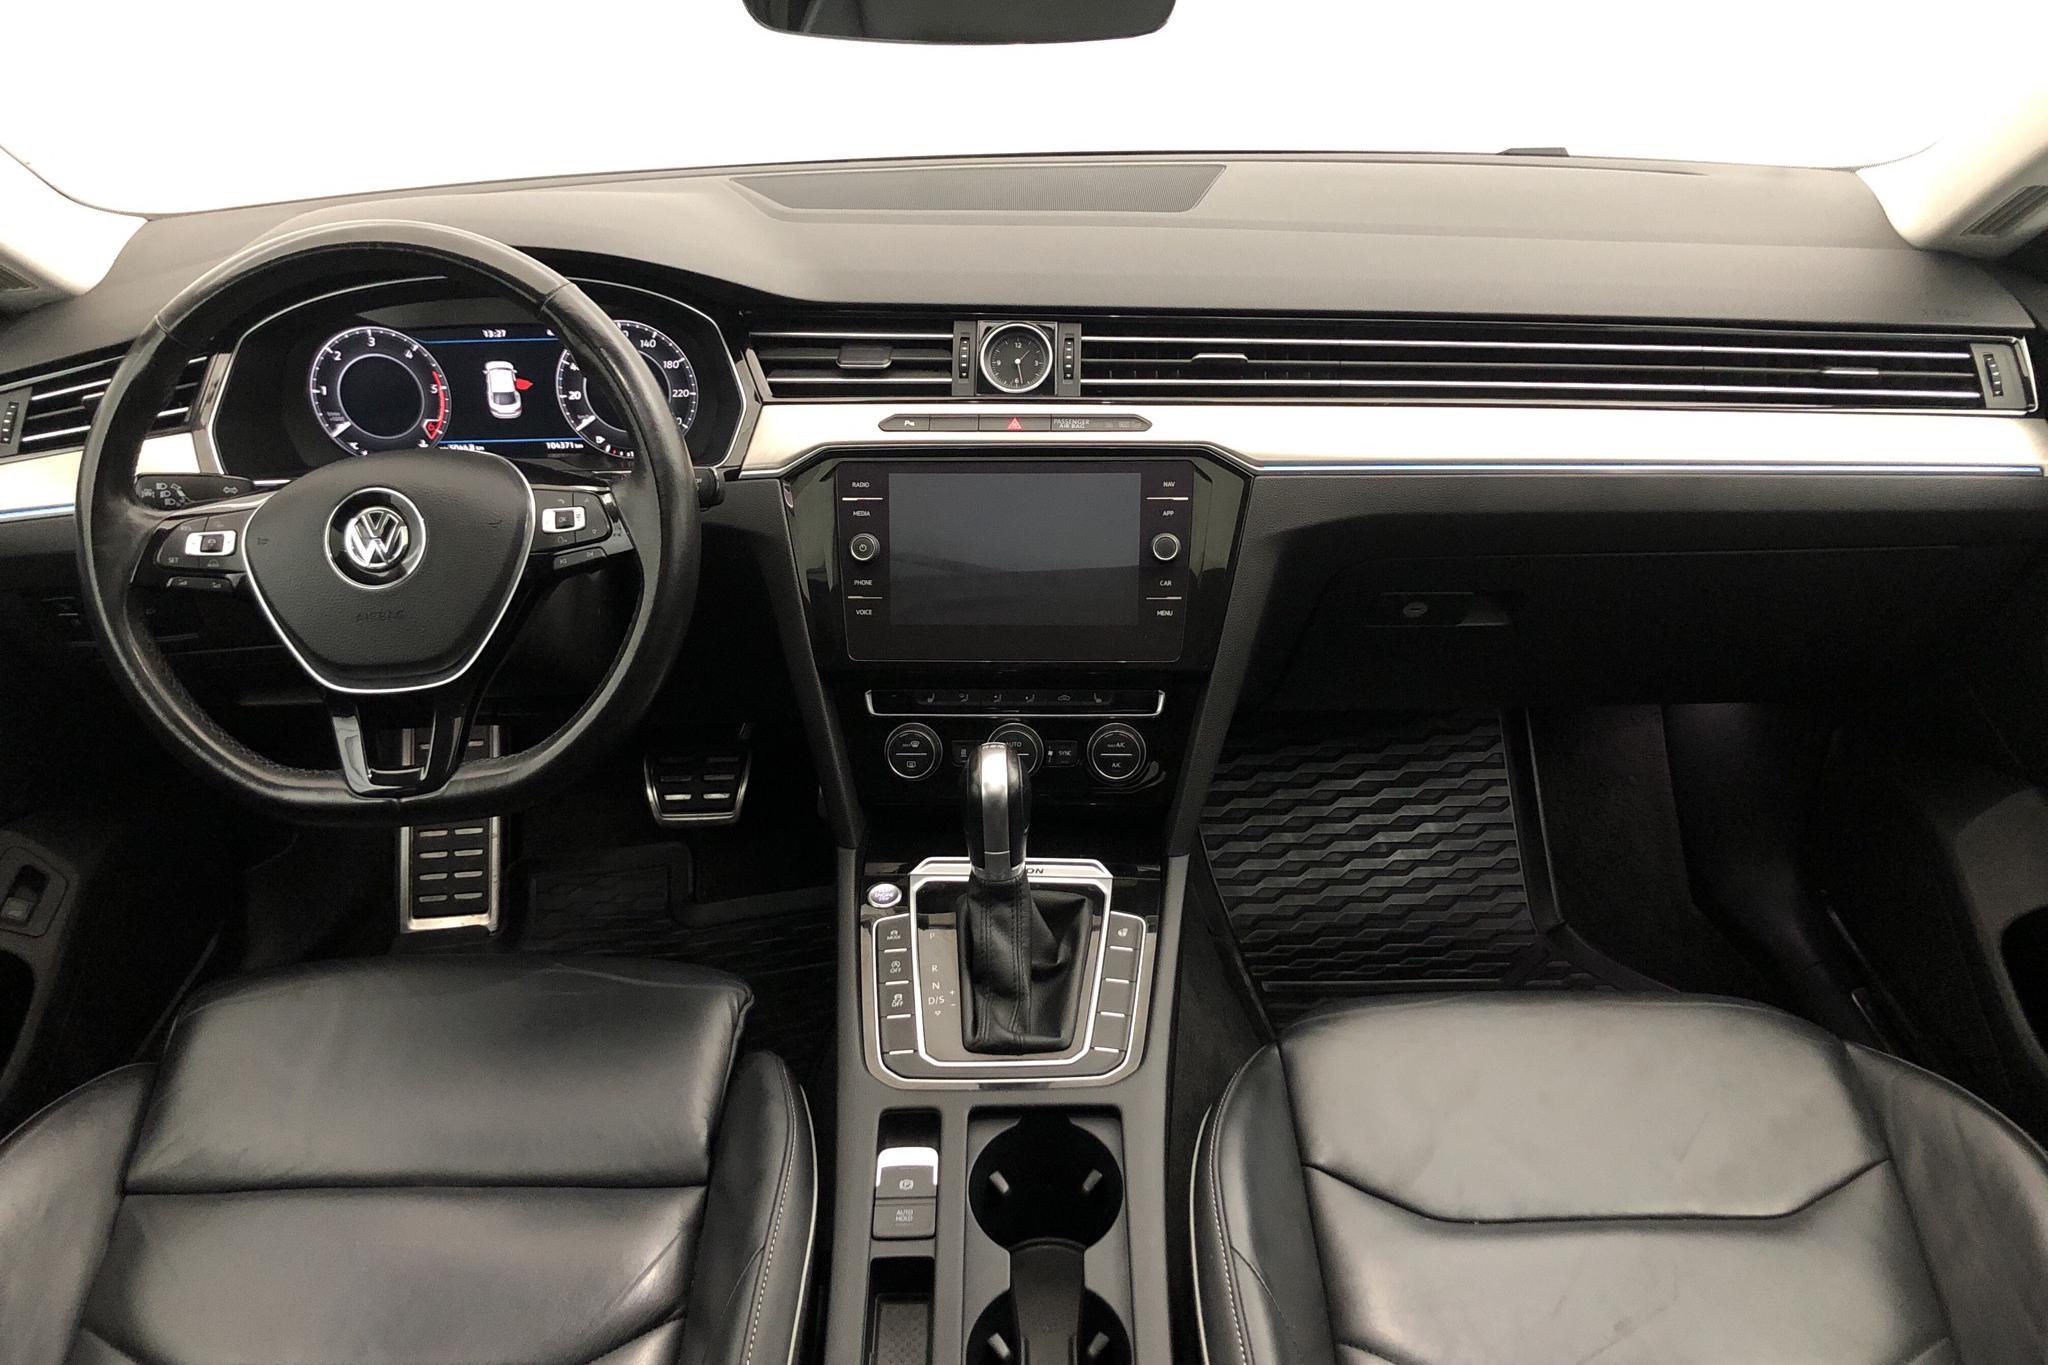 VW Arteon 2.0 TDI 4MOTION (240hk) - 104 370 km - Automatic - silver - 2017